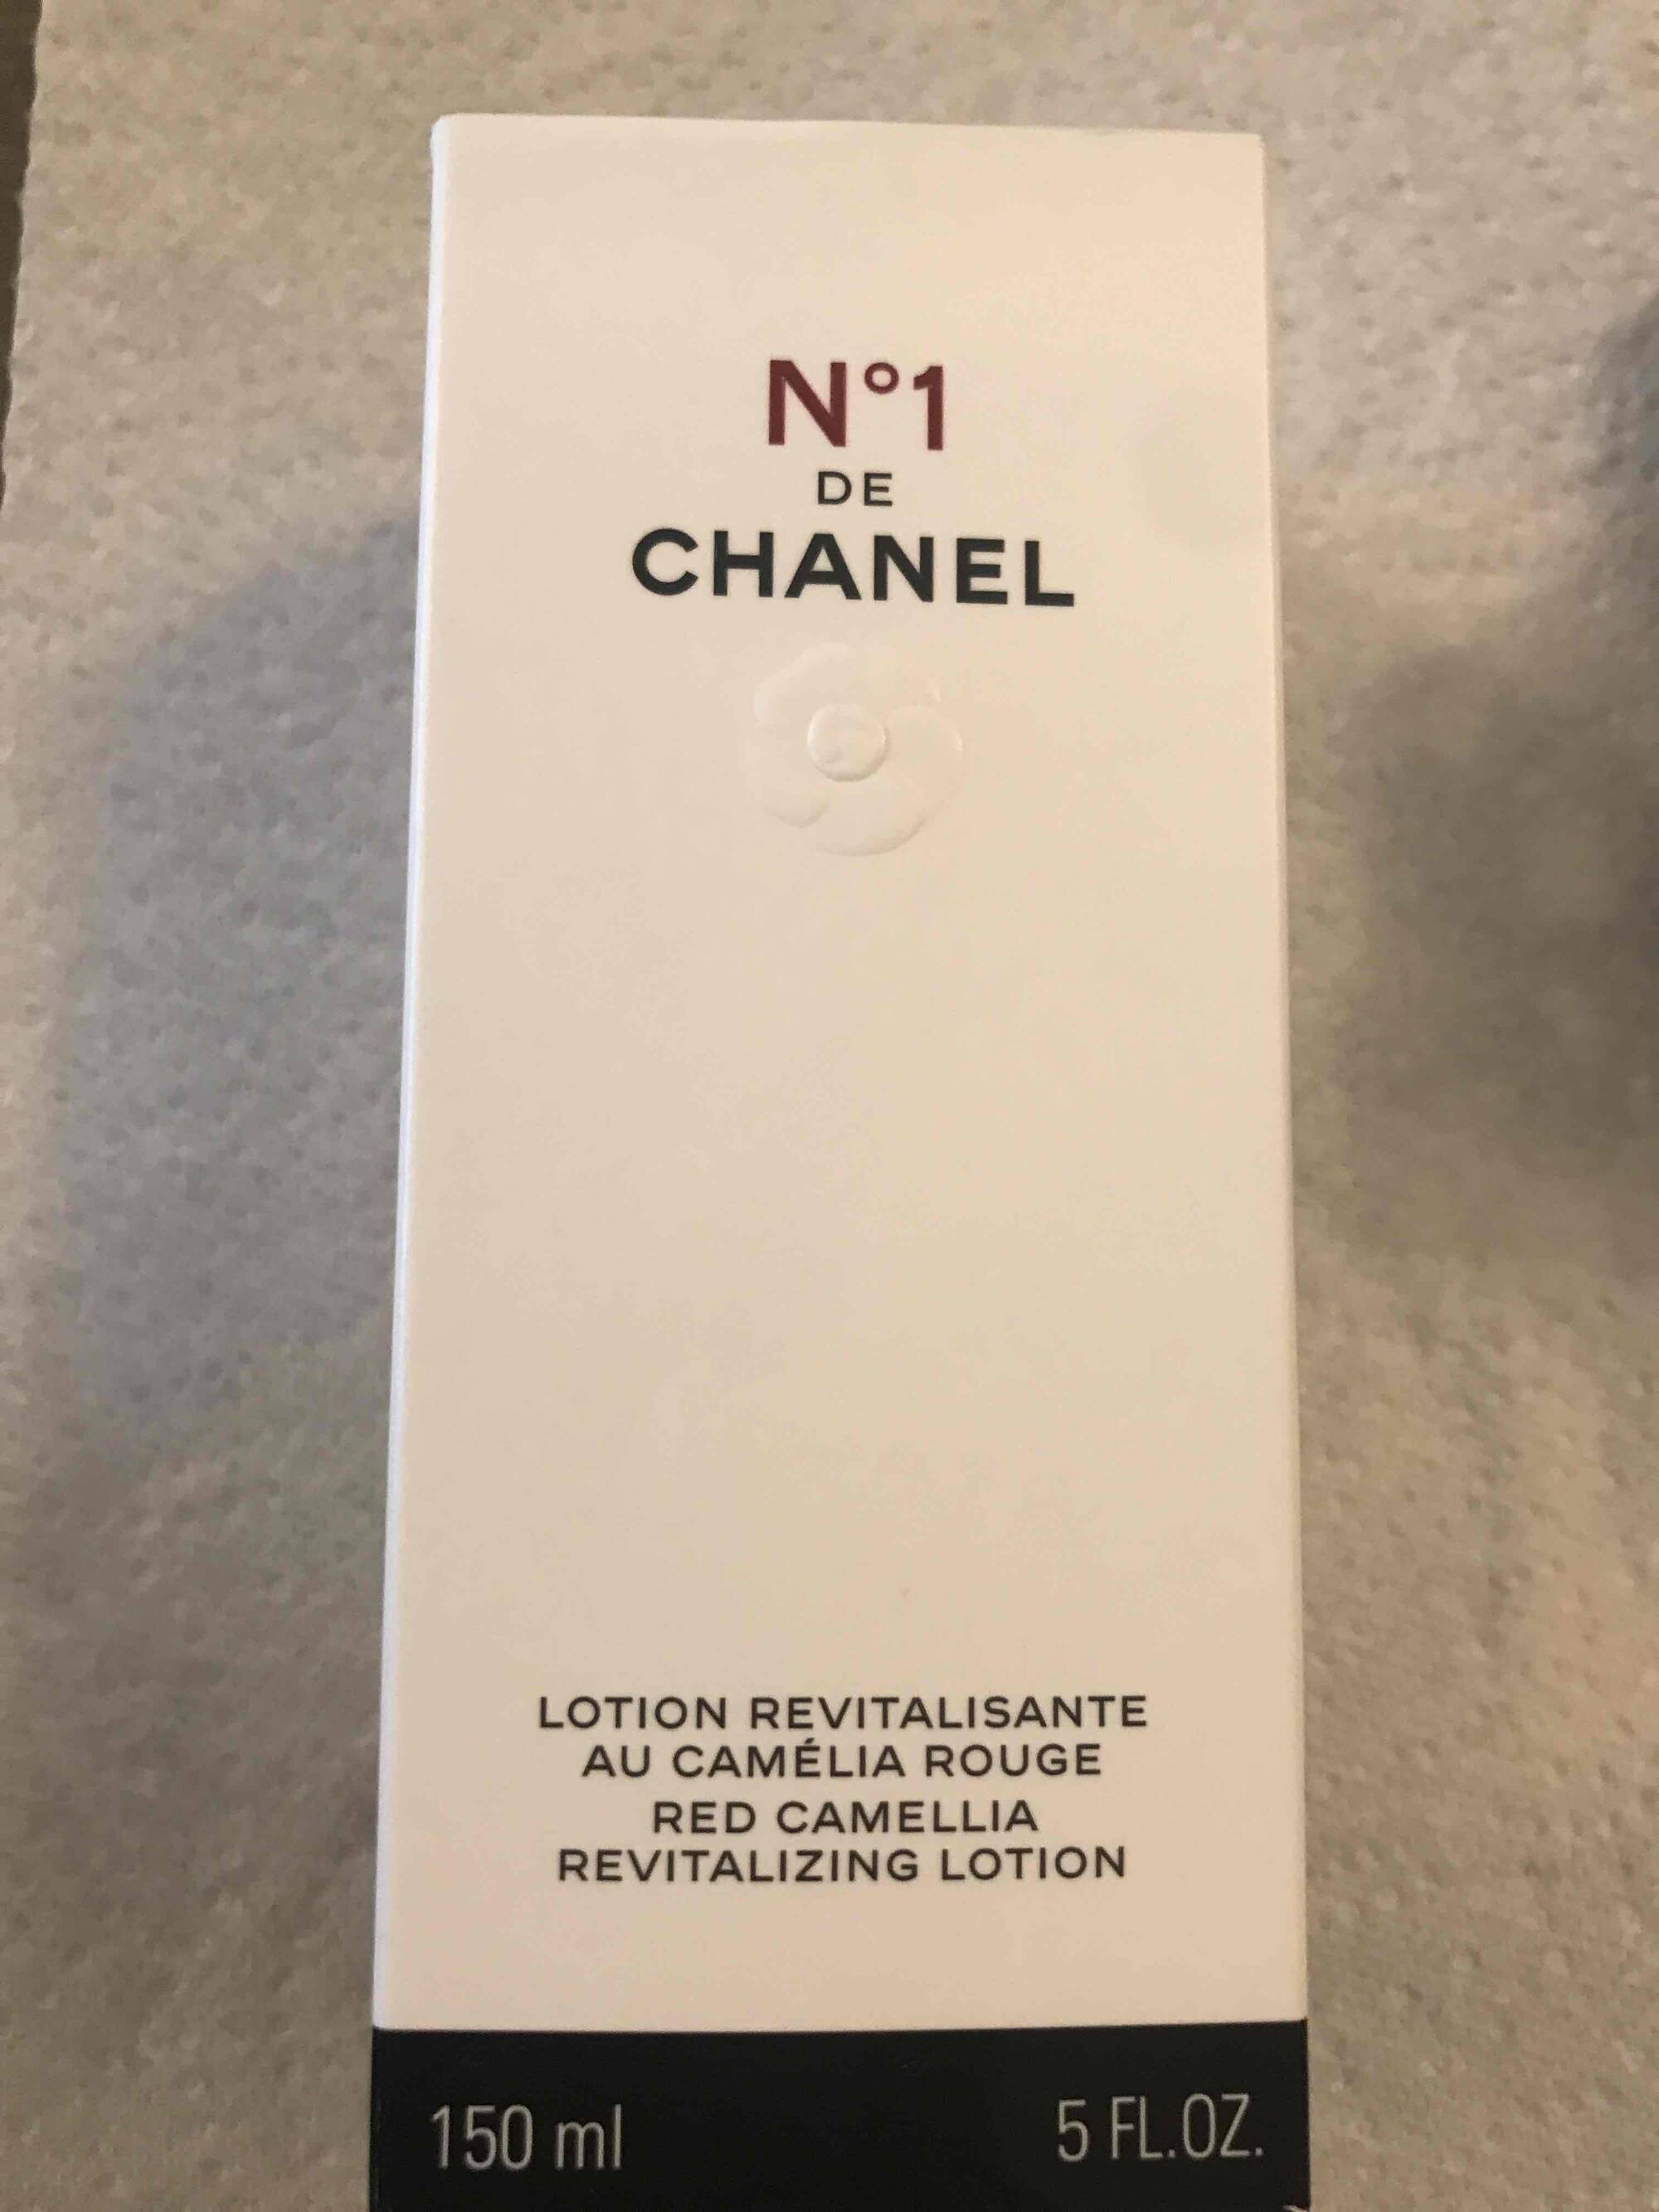 CHANEL - N°1 de Chanel - Lotion revitalisante au camèlia rouge